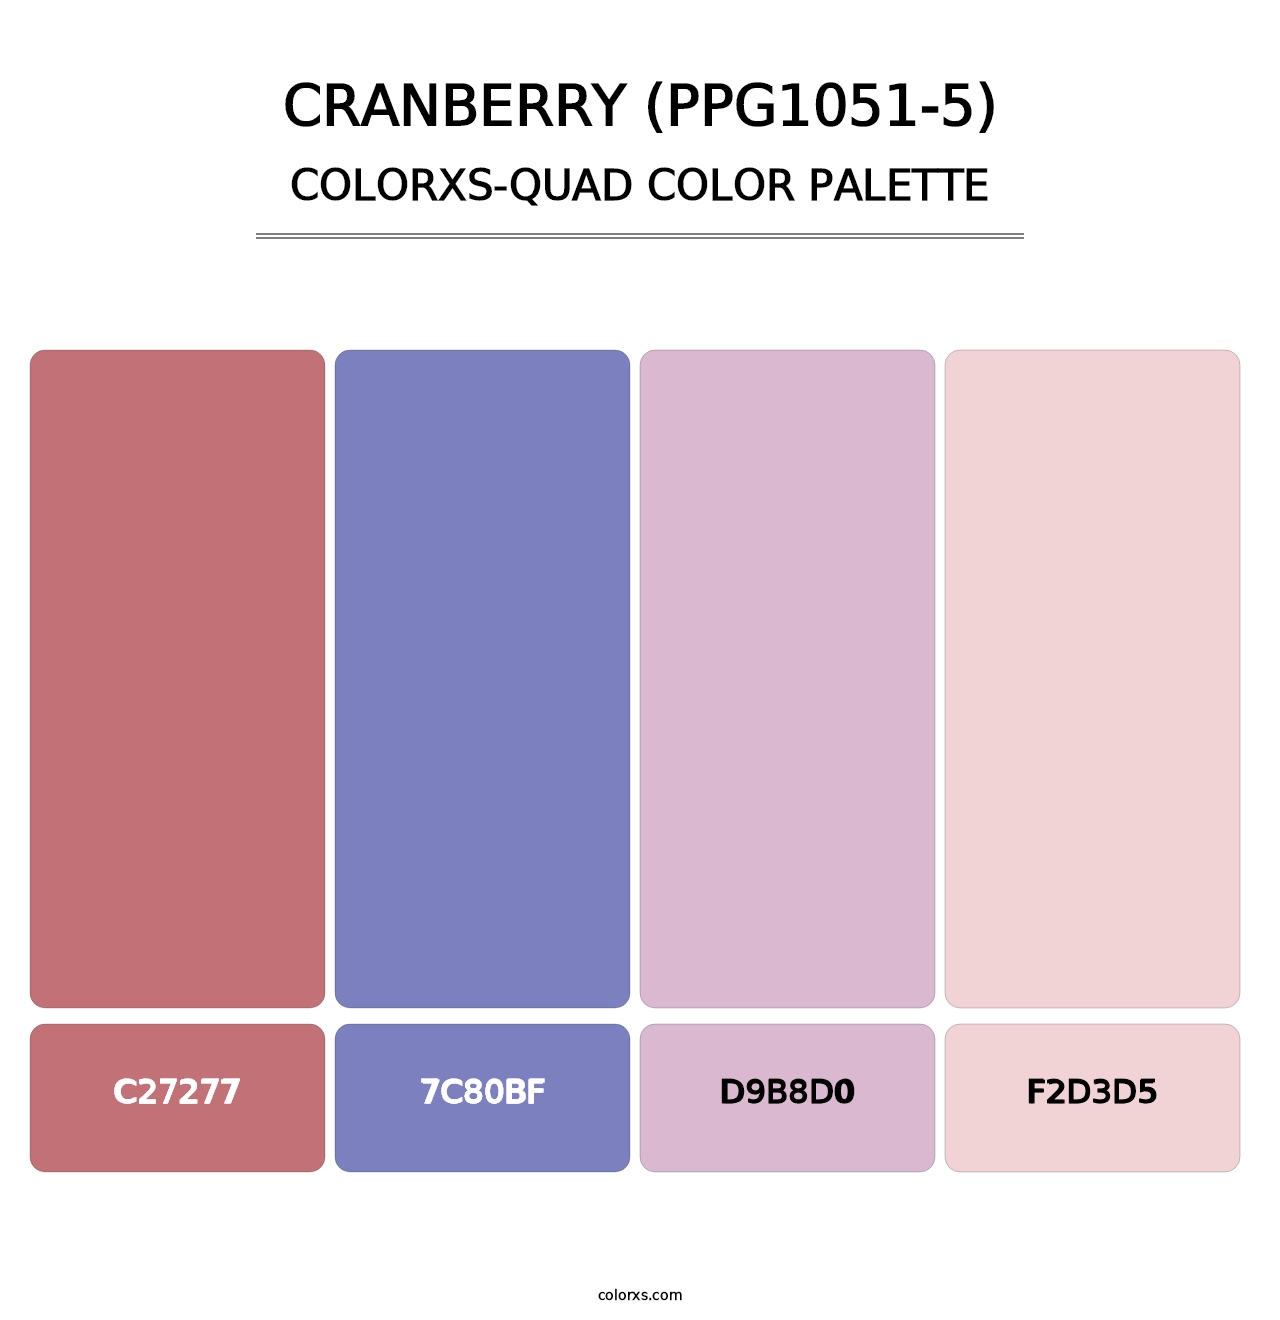 Cranberry (PPG1051-5) - Colorxs Quad Palette